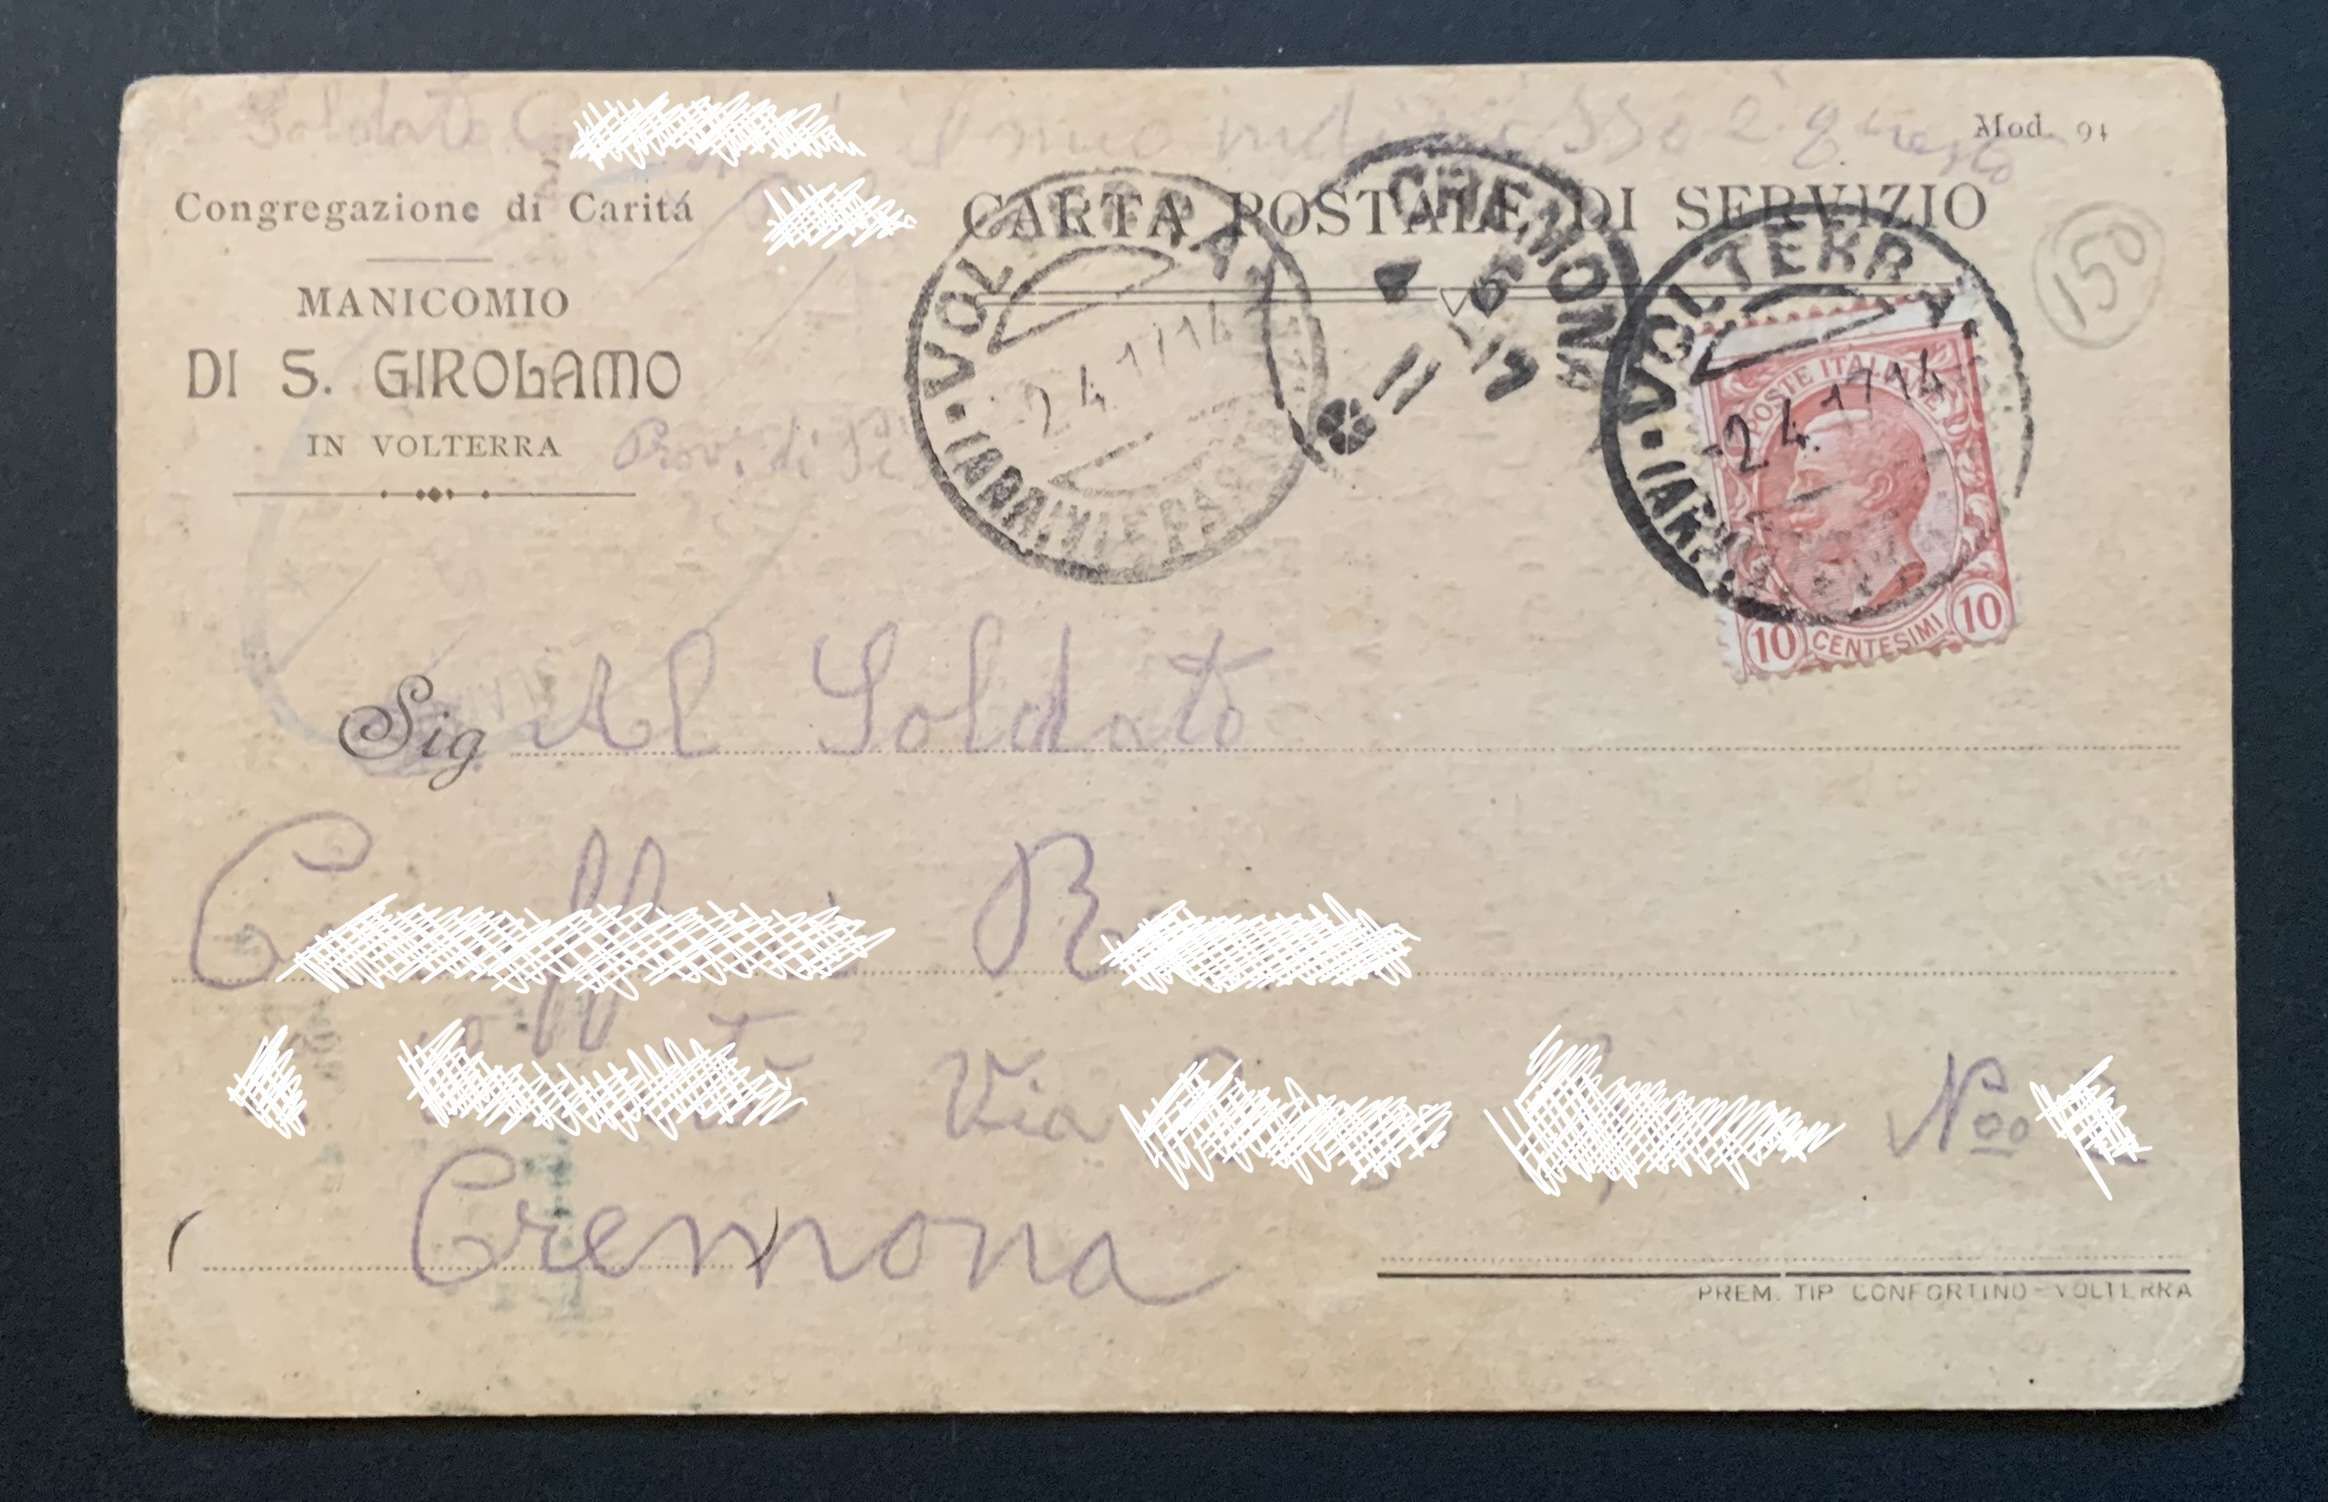 Carta postale di servizio inviata da P. nel 1917